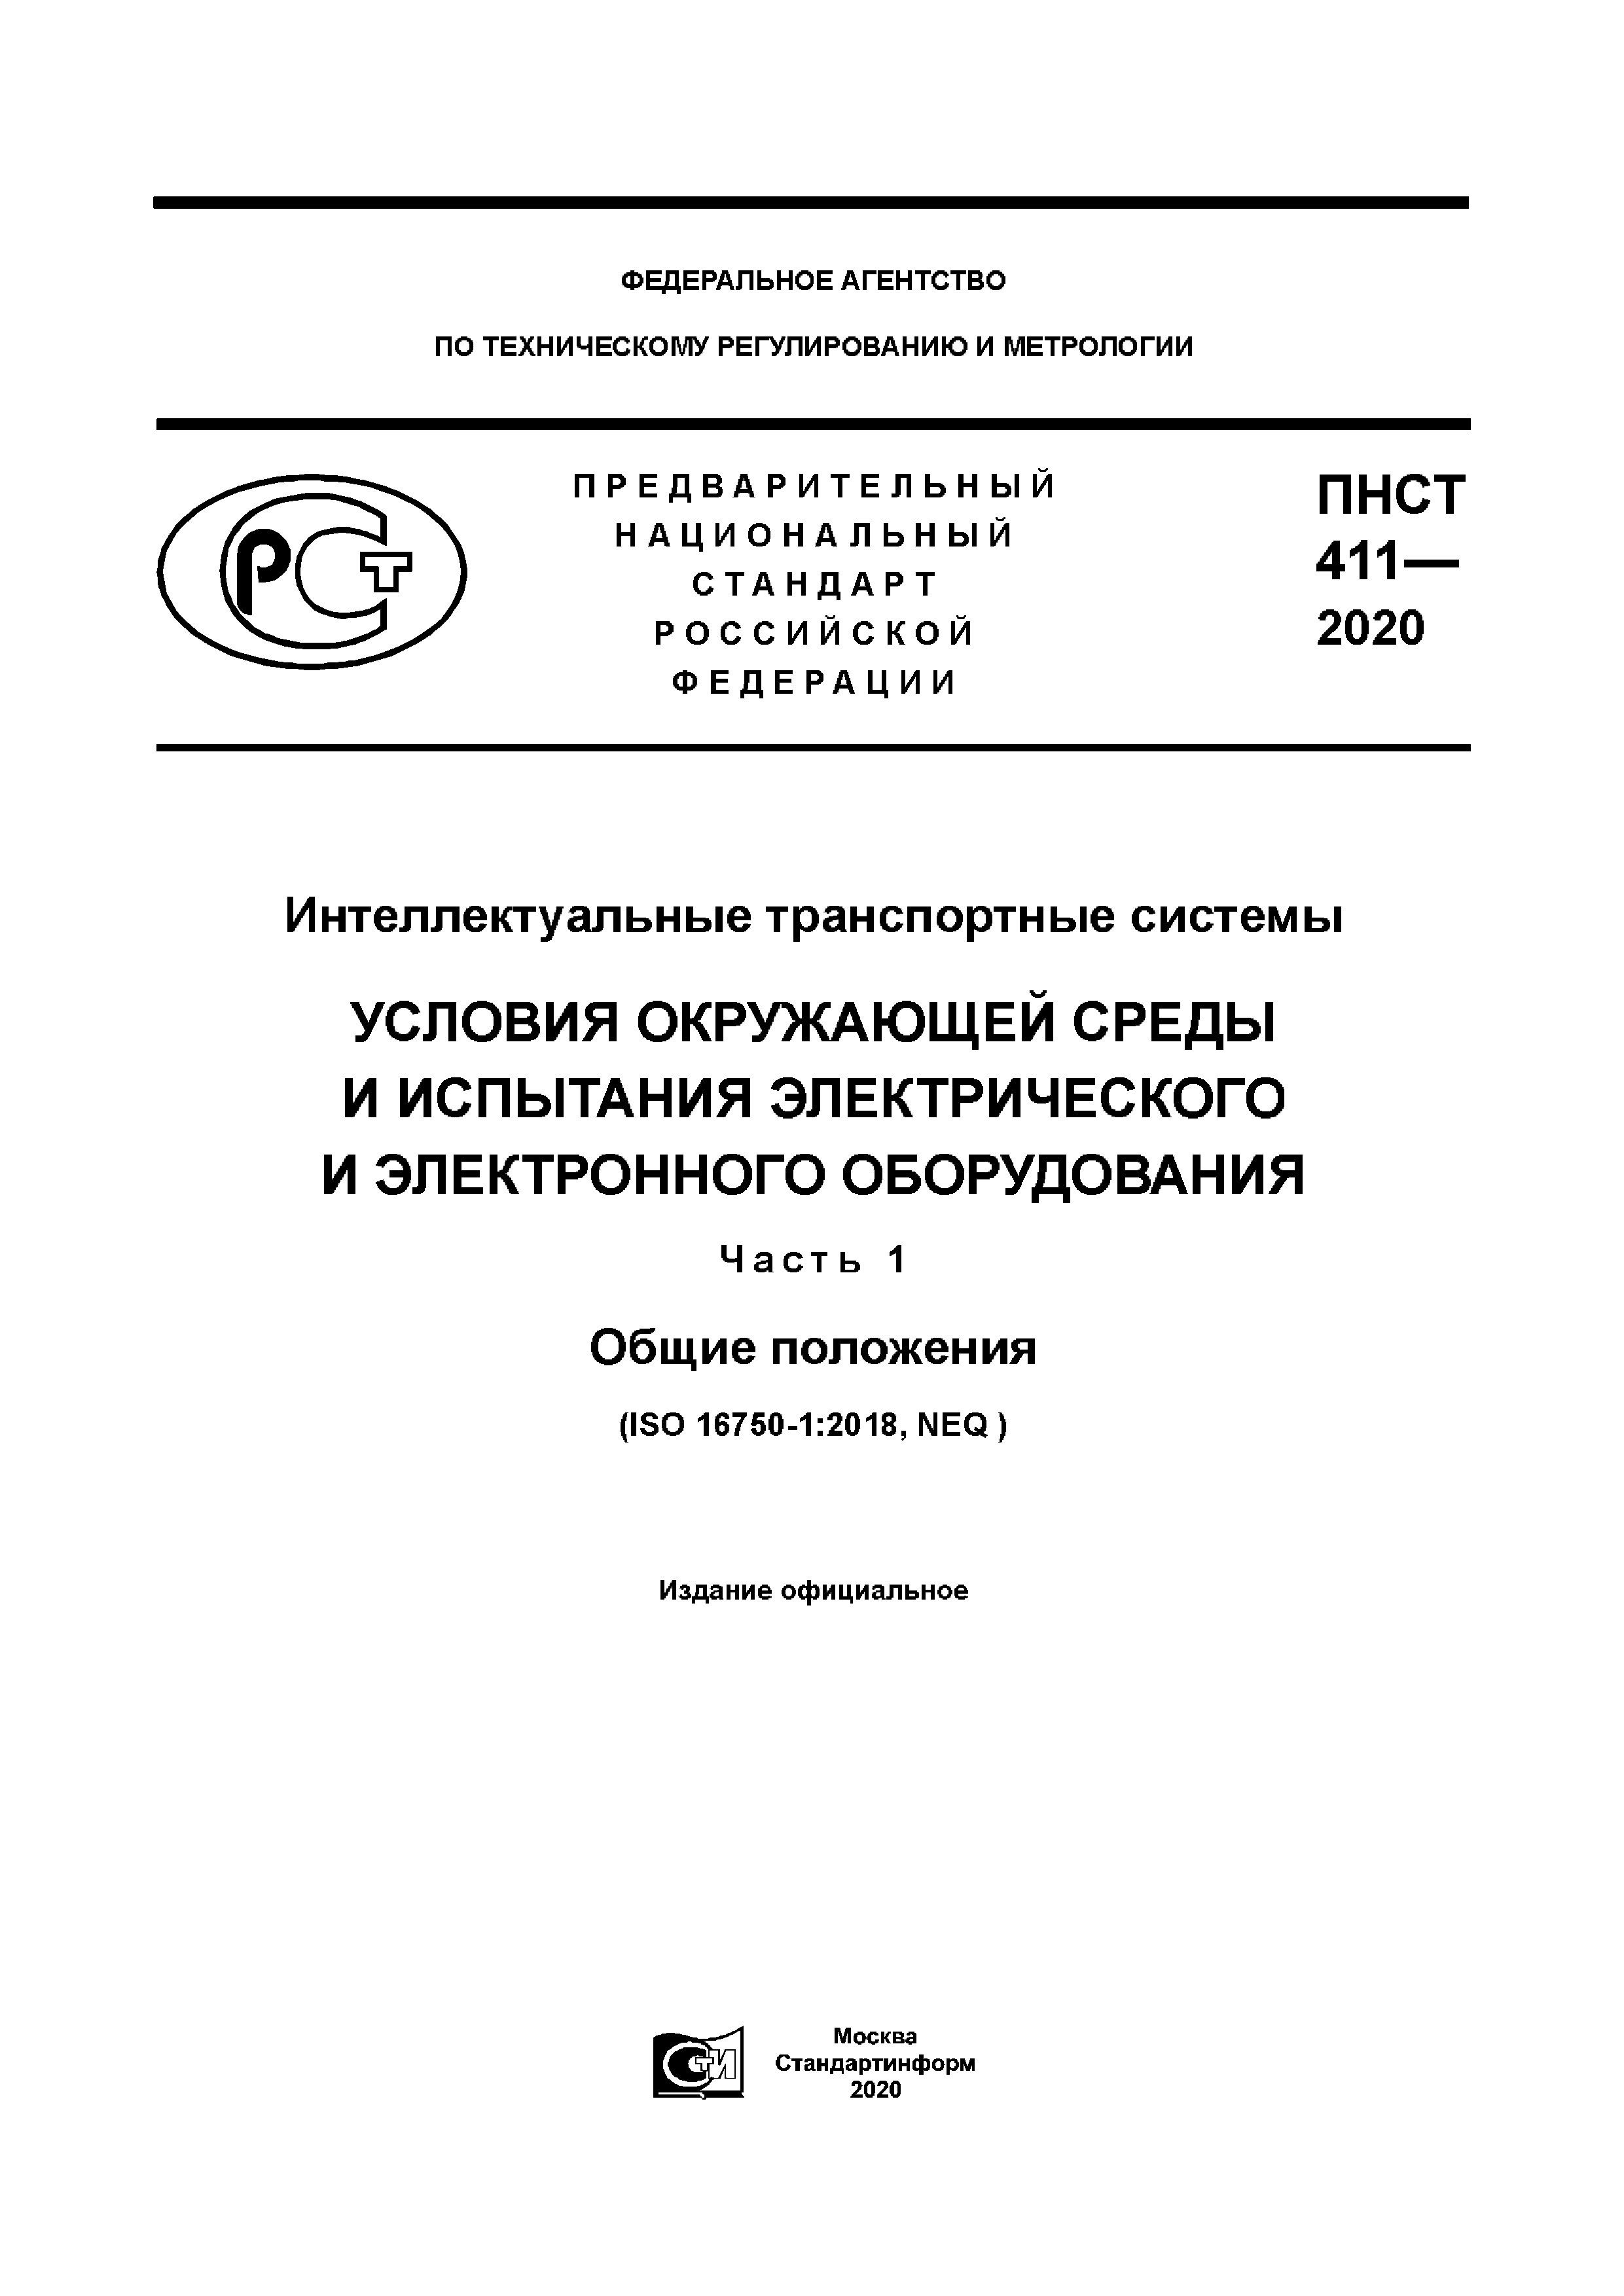 ПНСТ 411-2020